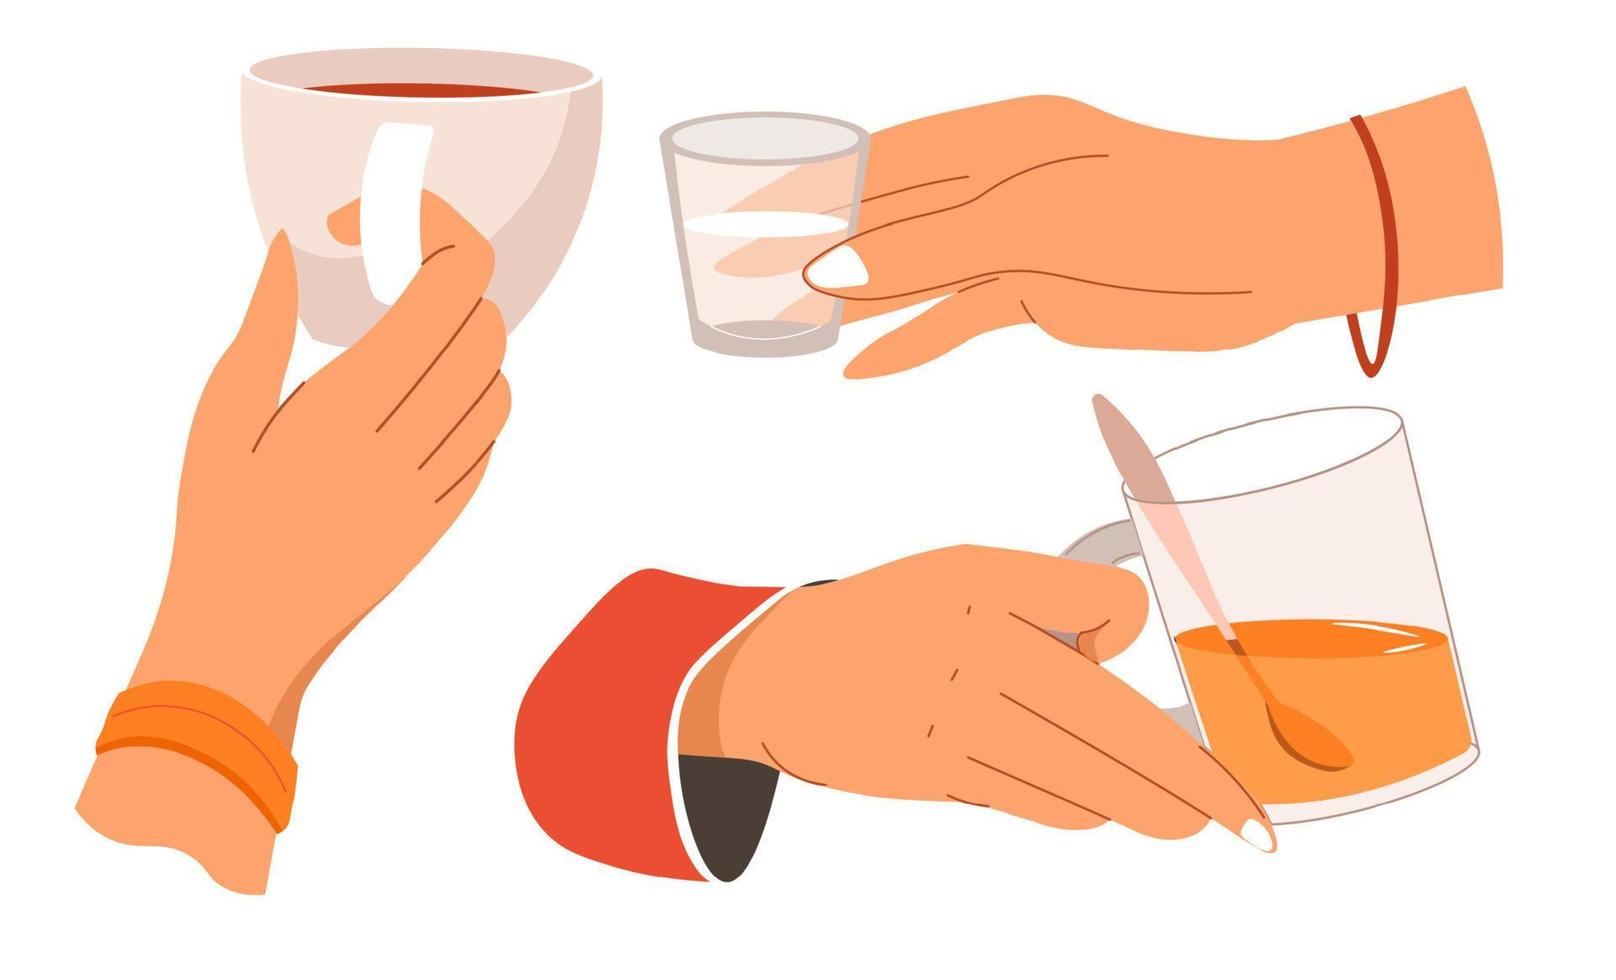 mano sosteniendo un vaso de agua, té y jugo de vector